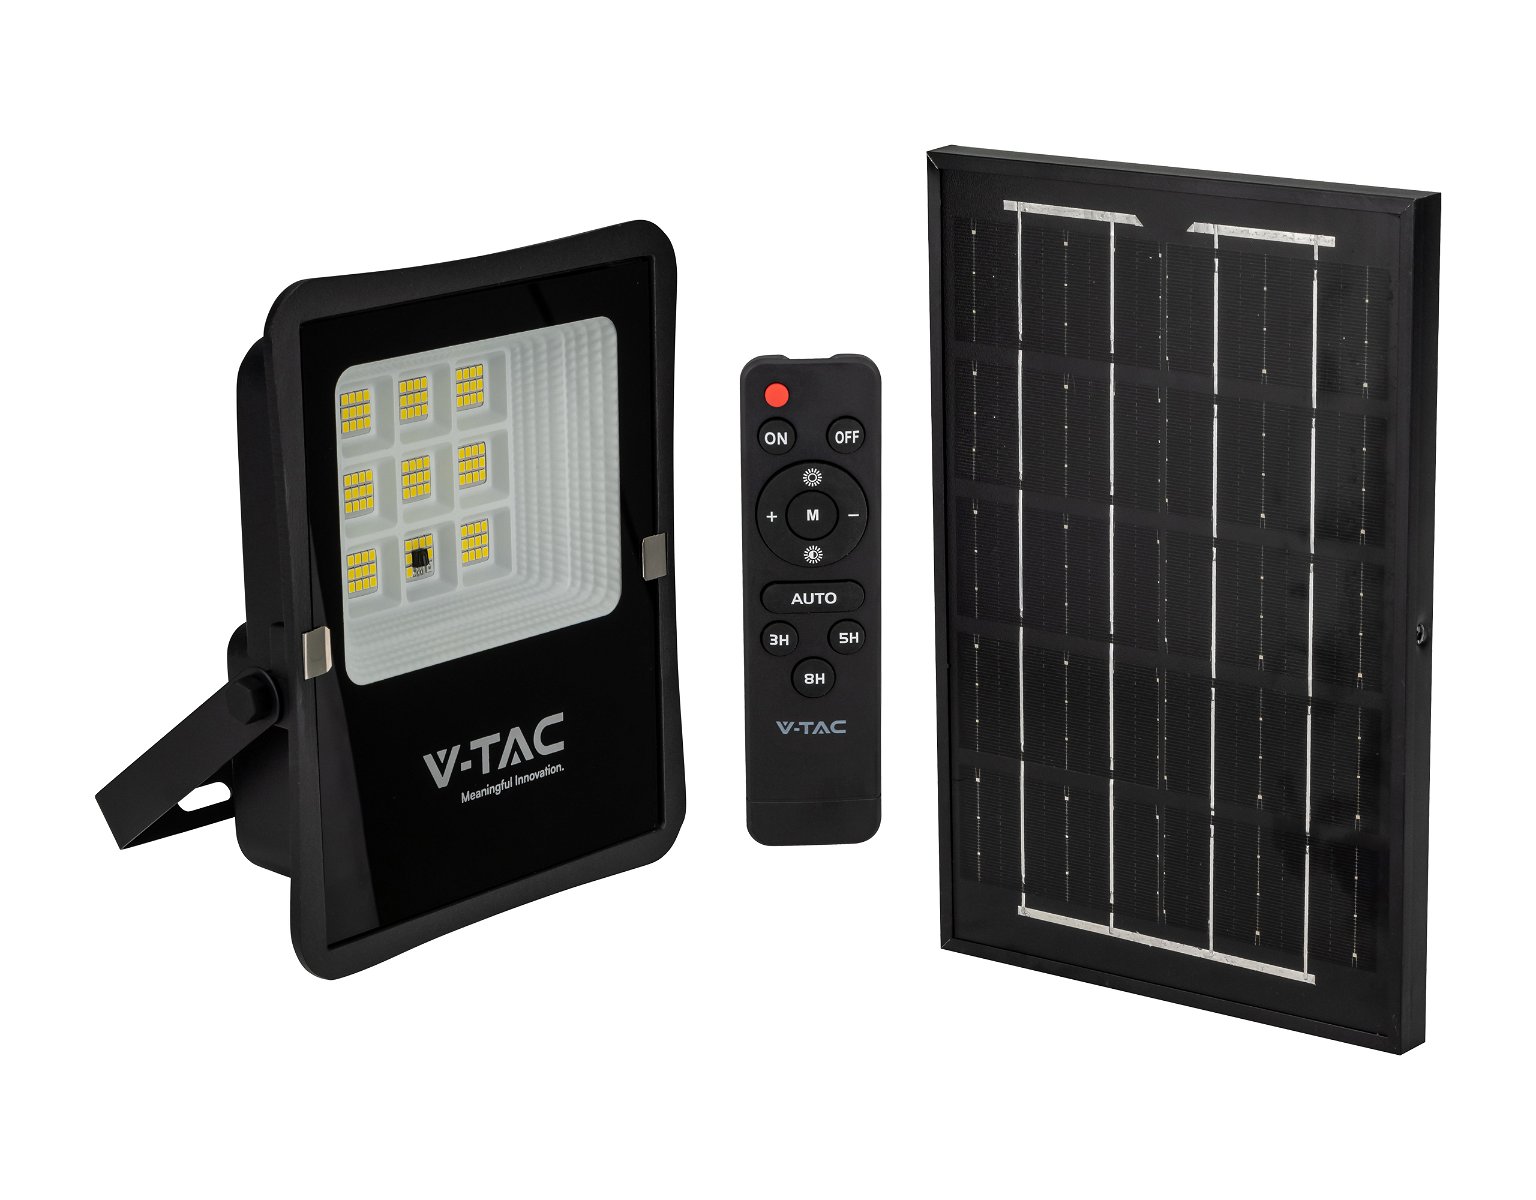 LED prožektorius V -TAC, įkraunamas saulės energija, IP65, 4000 K, 400 lm, su pultu, juodos spalvos - 1